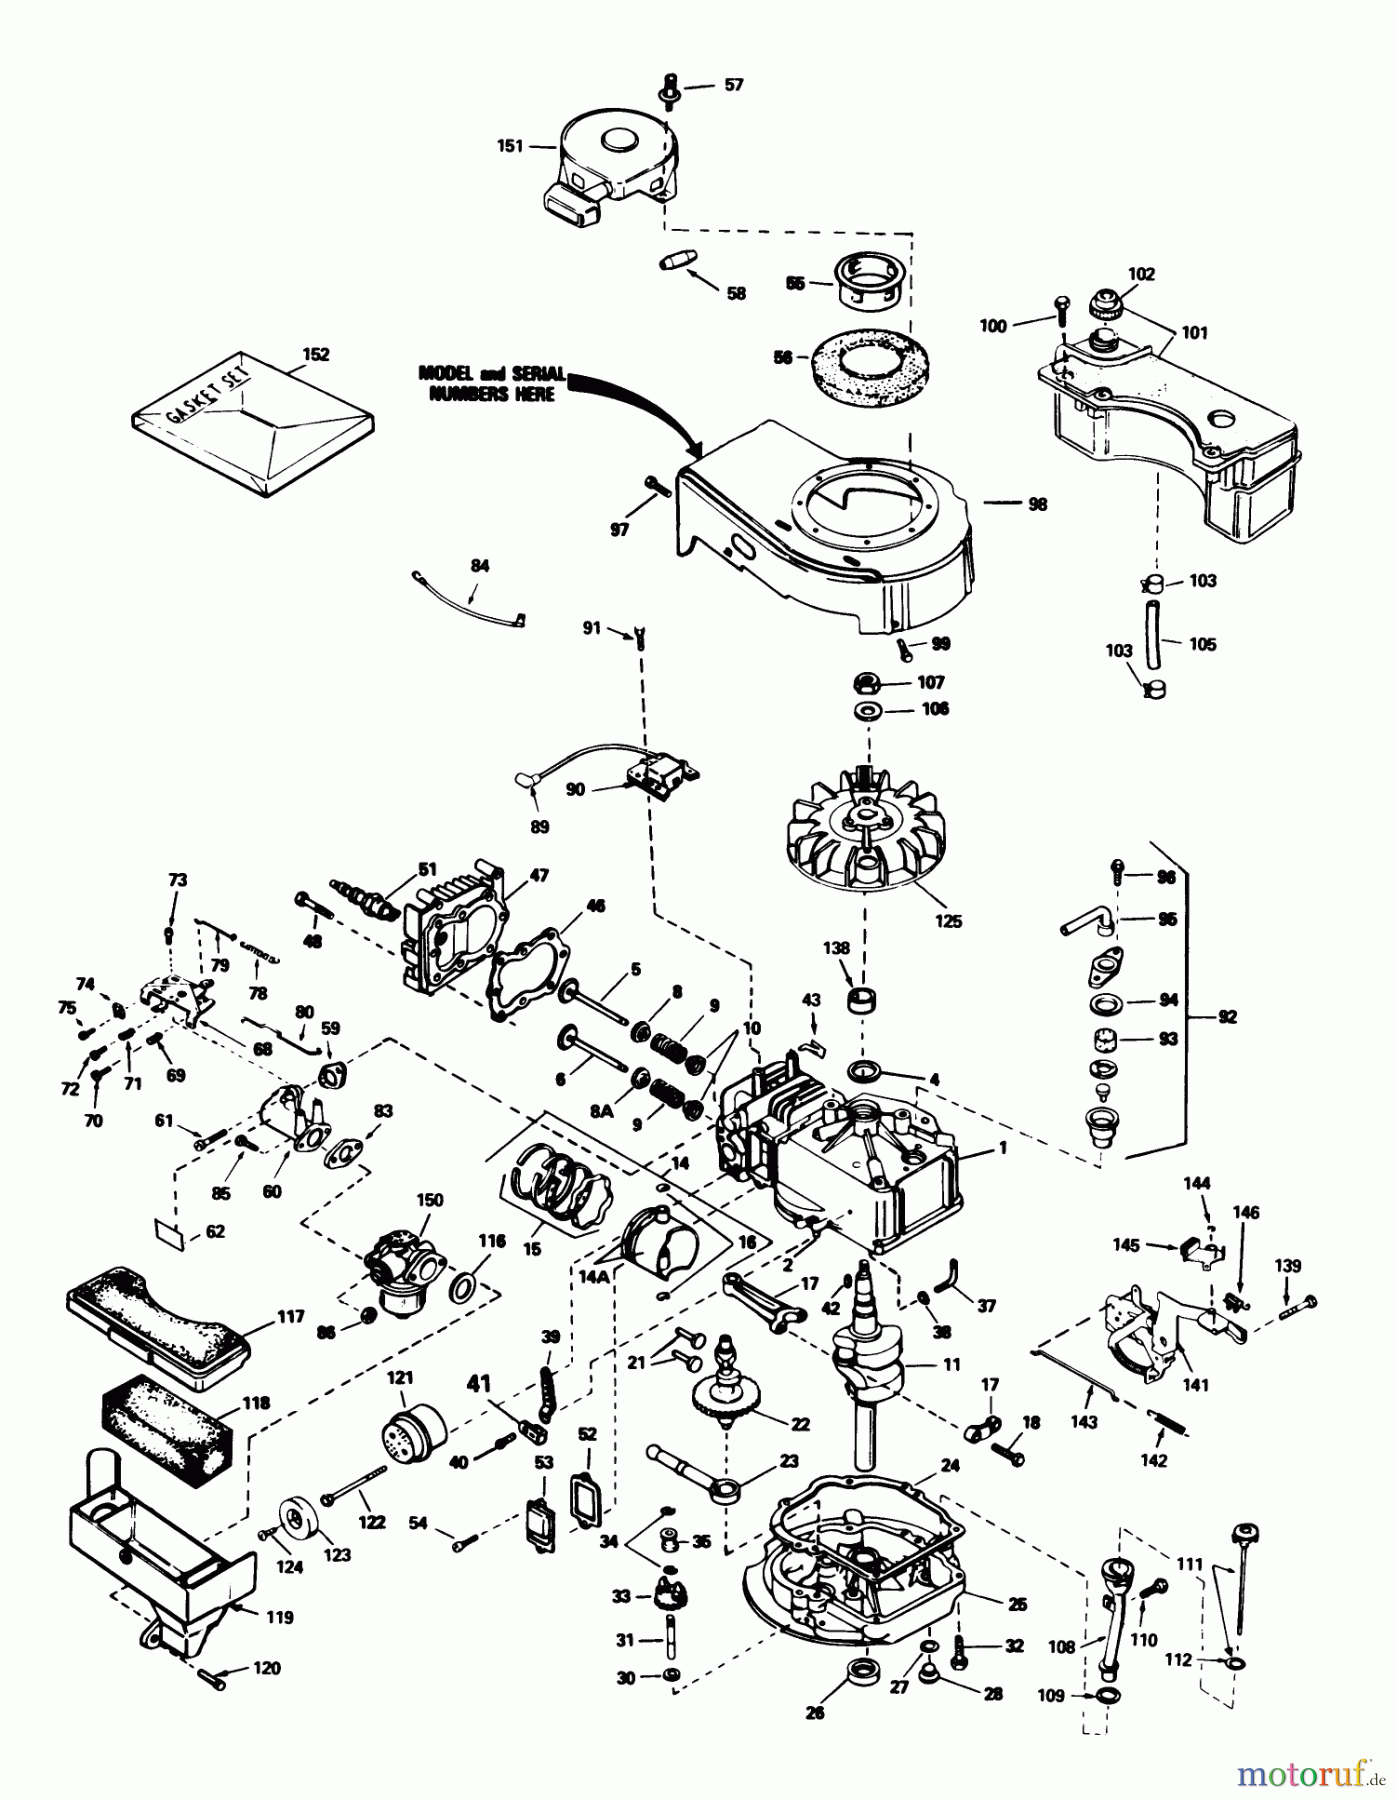  Toro Neu Mowers, Walk-Behind Seite 1 16775 - Toro Lawnmower, 1986 (6000001-6999999) ENGINE TECUMSEH MODEL NO. TVS100-44001